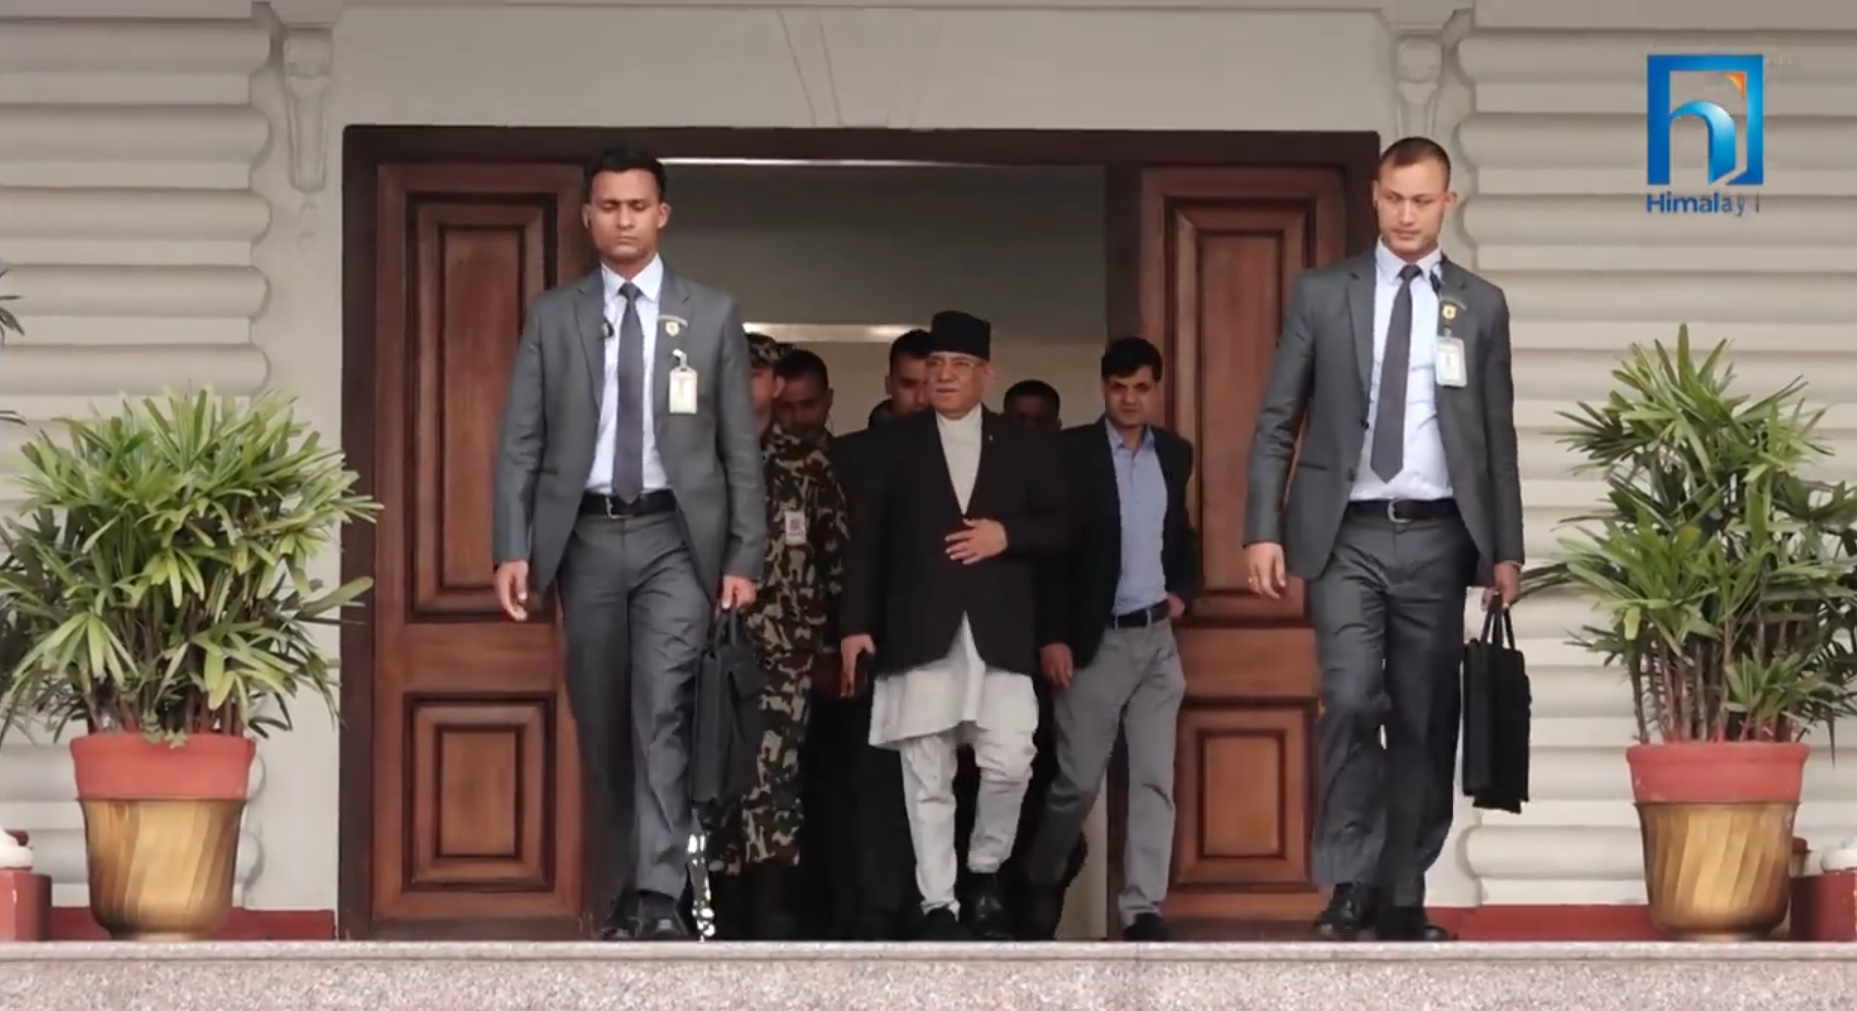 प्रधानमन्त्रीको चीन भ्रमण, यस्ता छन् नेपालका एजेण्डा (भिडियो रिपोर्टसहित)